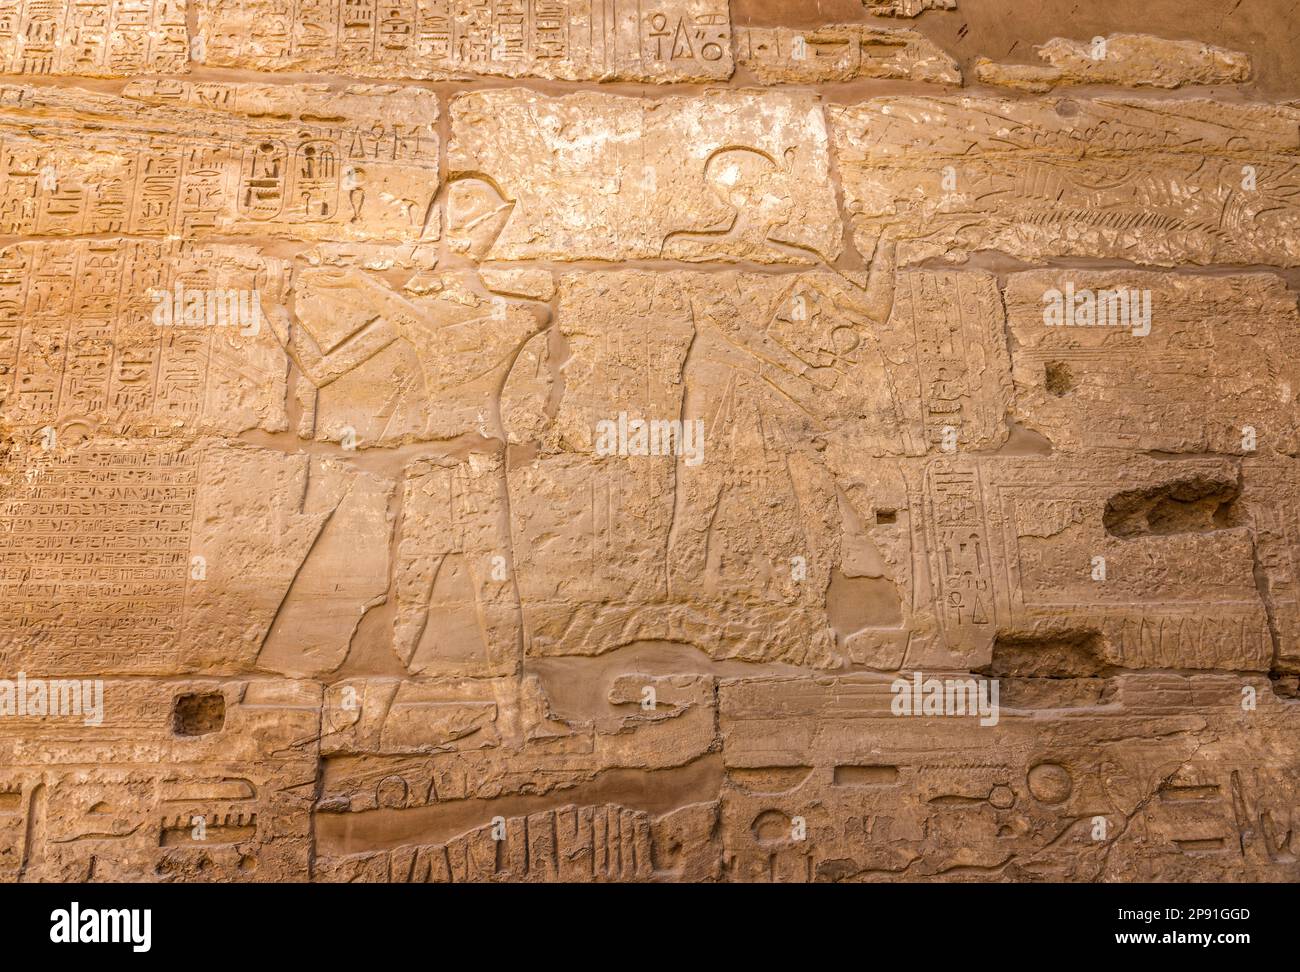 Antiguos hiroglifos egipcios en el templo de Karnak, Egipto Foto de stock